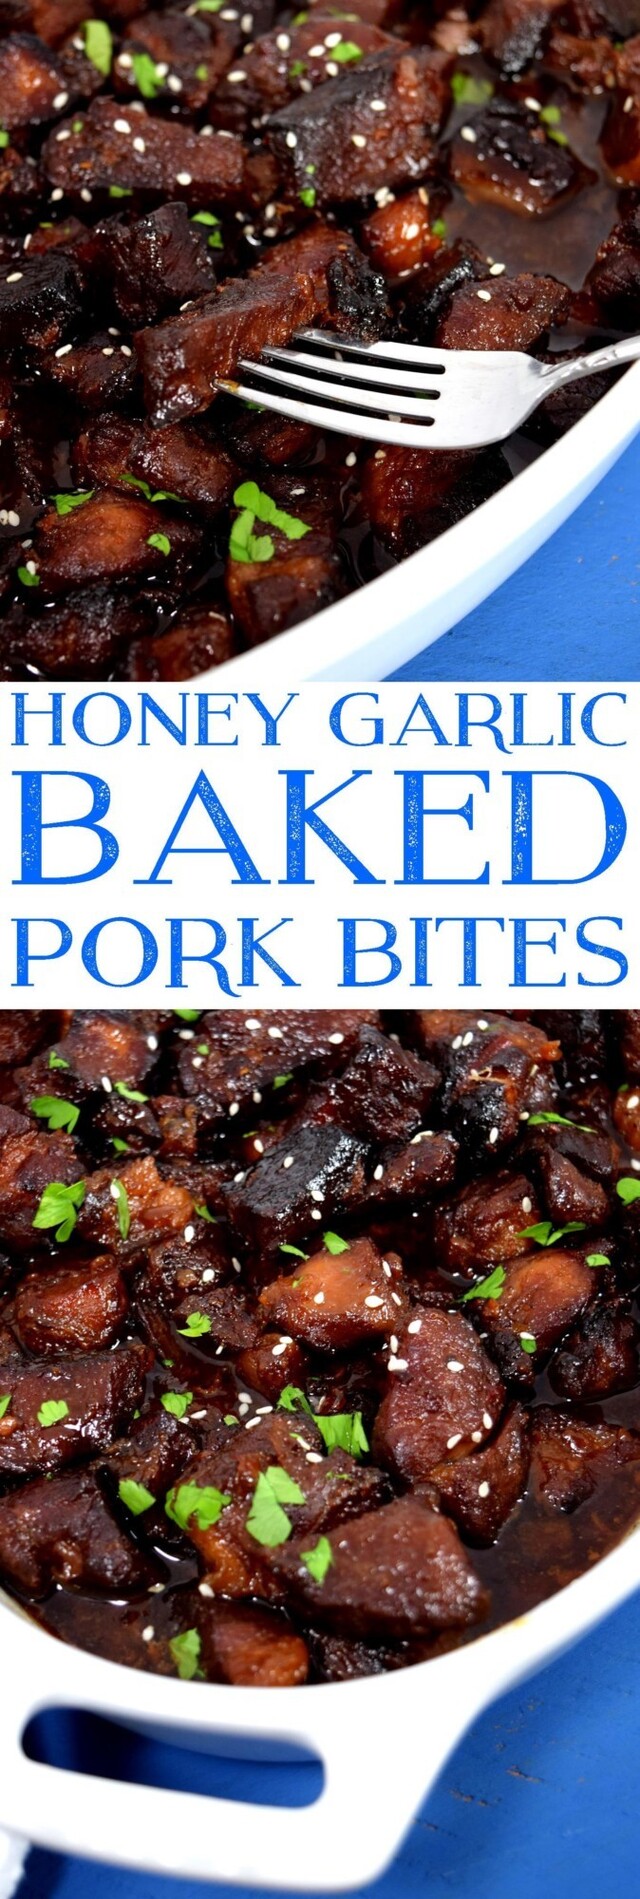 Honey Garlic Baked Pork Bites